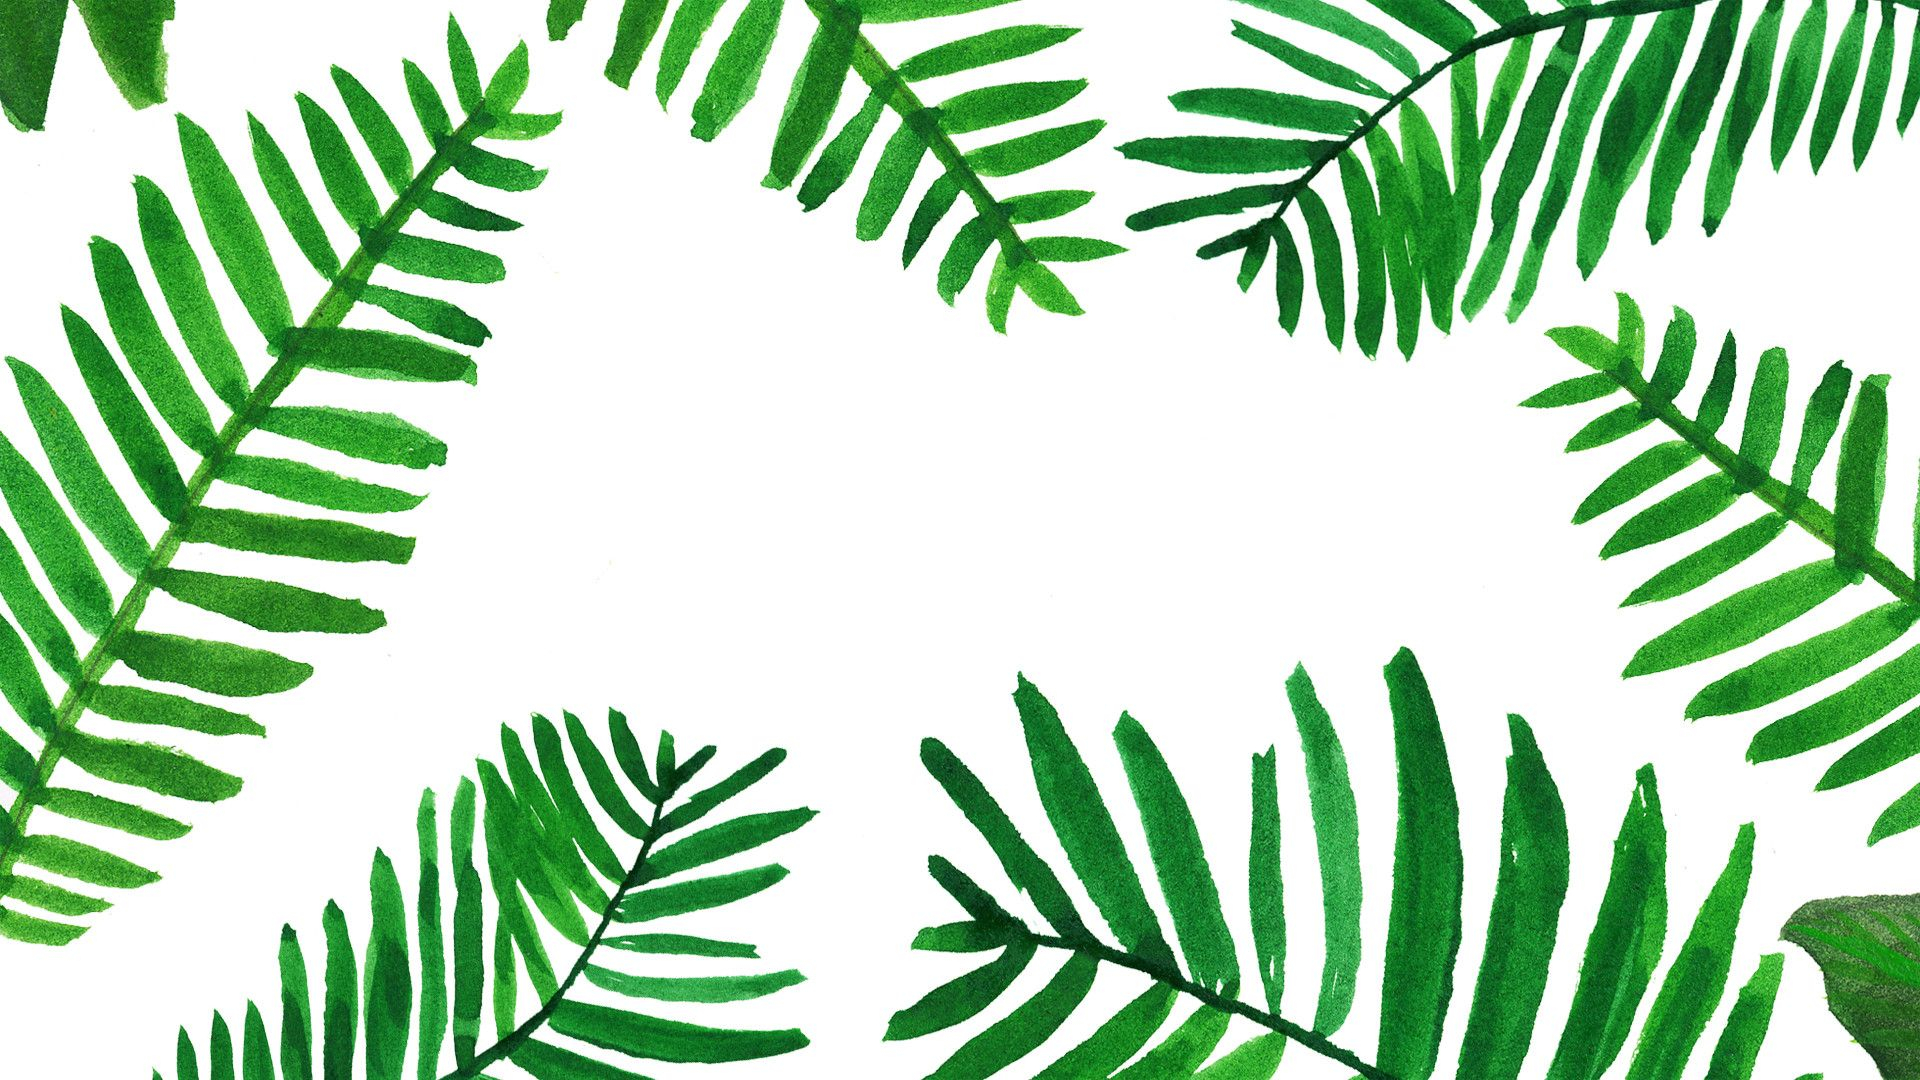 1920x1080 Tropical Leaves Desktop Wallpapers Top Free Tropical Leaves Desktop Backgrounds